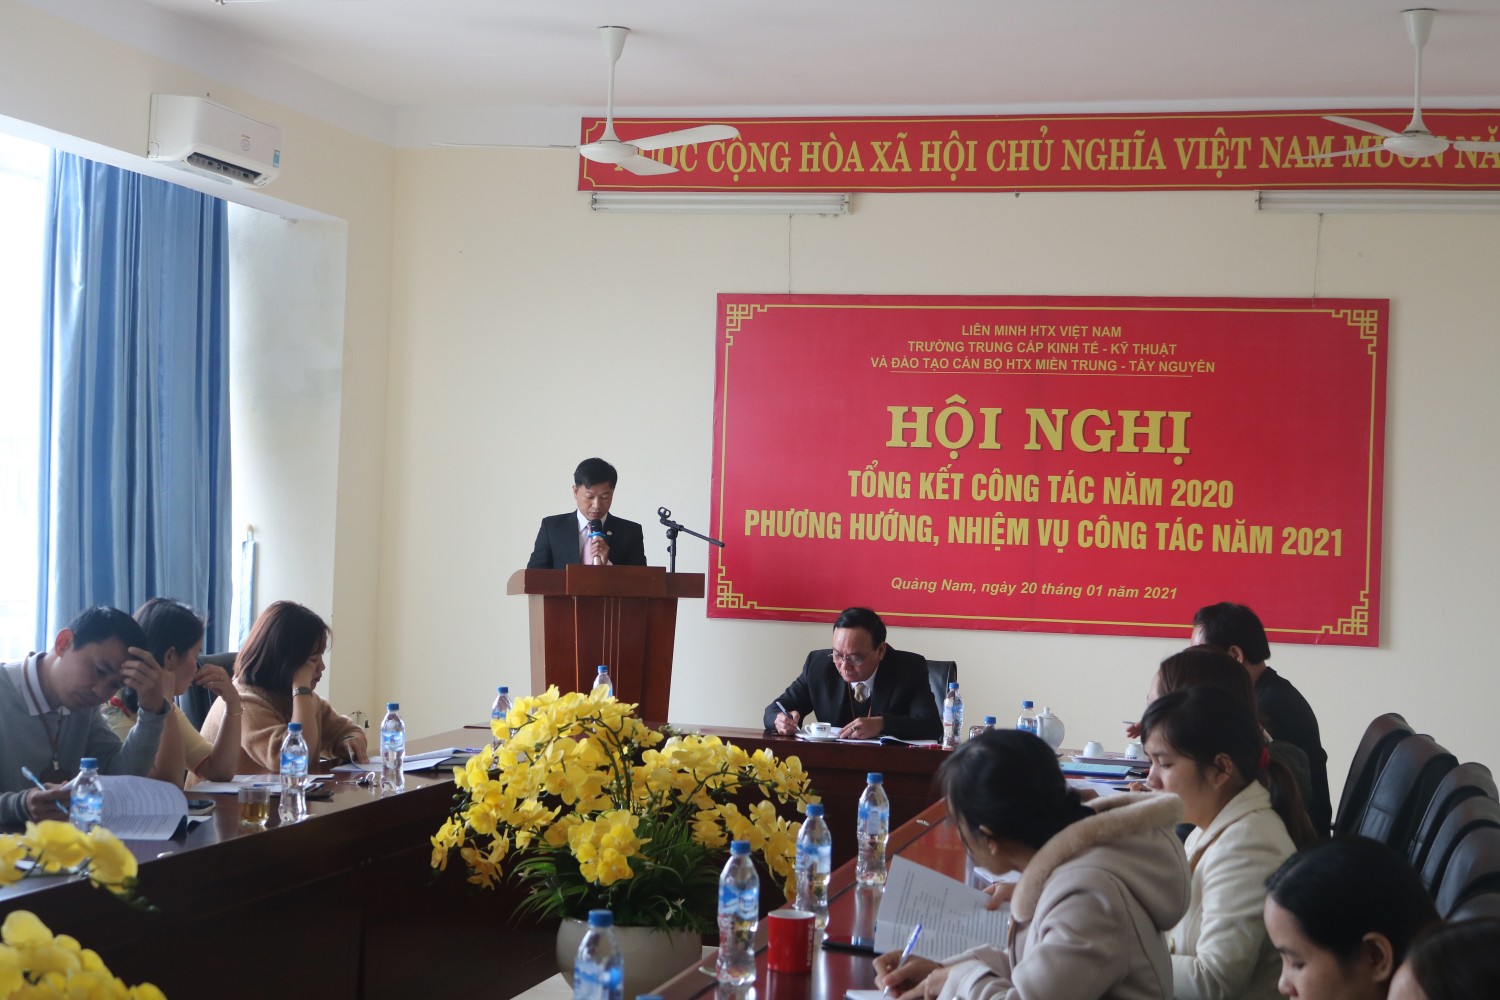 Thầy Trần Quang Hậu trình bàydự thảo báo cáo hội nghị